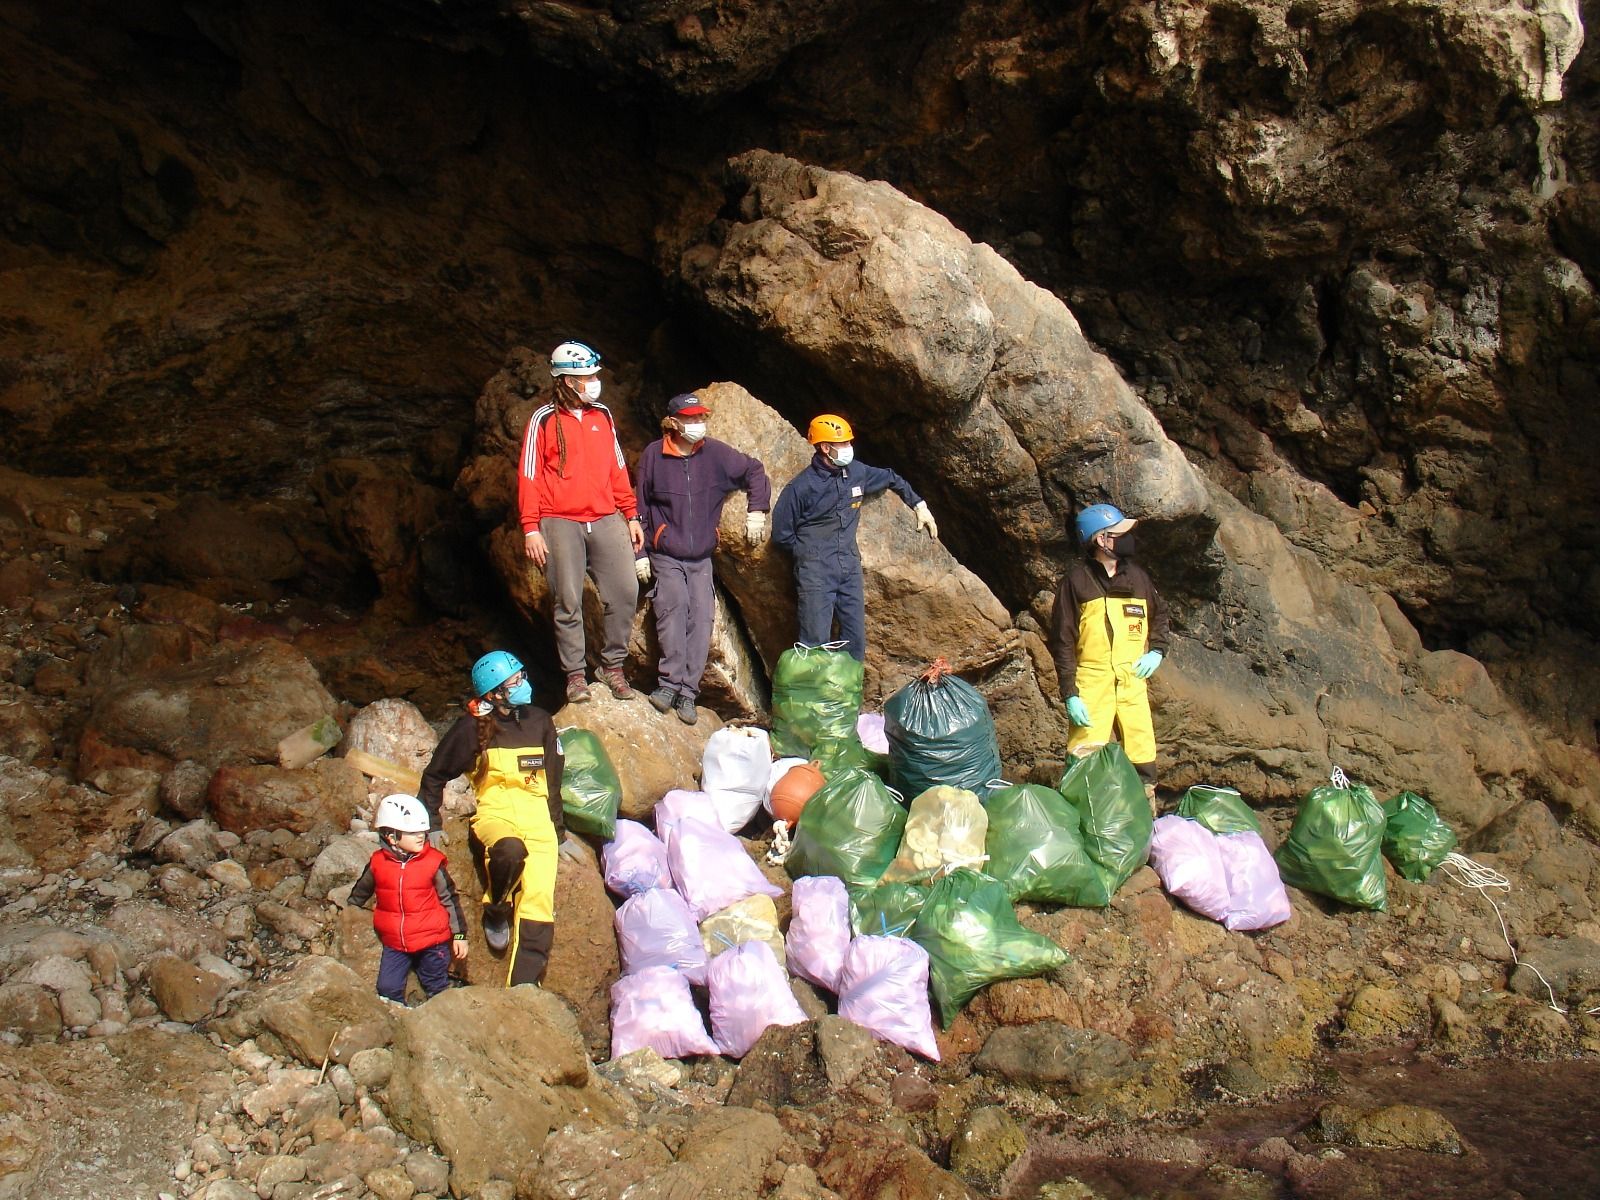 Voluntarios de la Federación de Espeleología de la Región de Murcia realizan tareas de limpieza en cuevas gracias al proyecto de conservación de cavidades financiado por la Comunidad